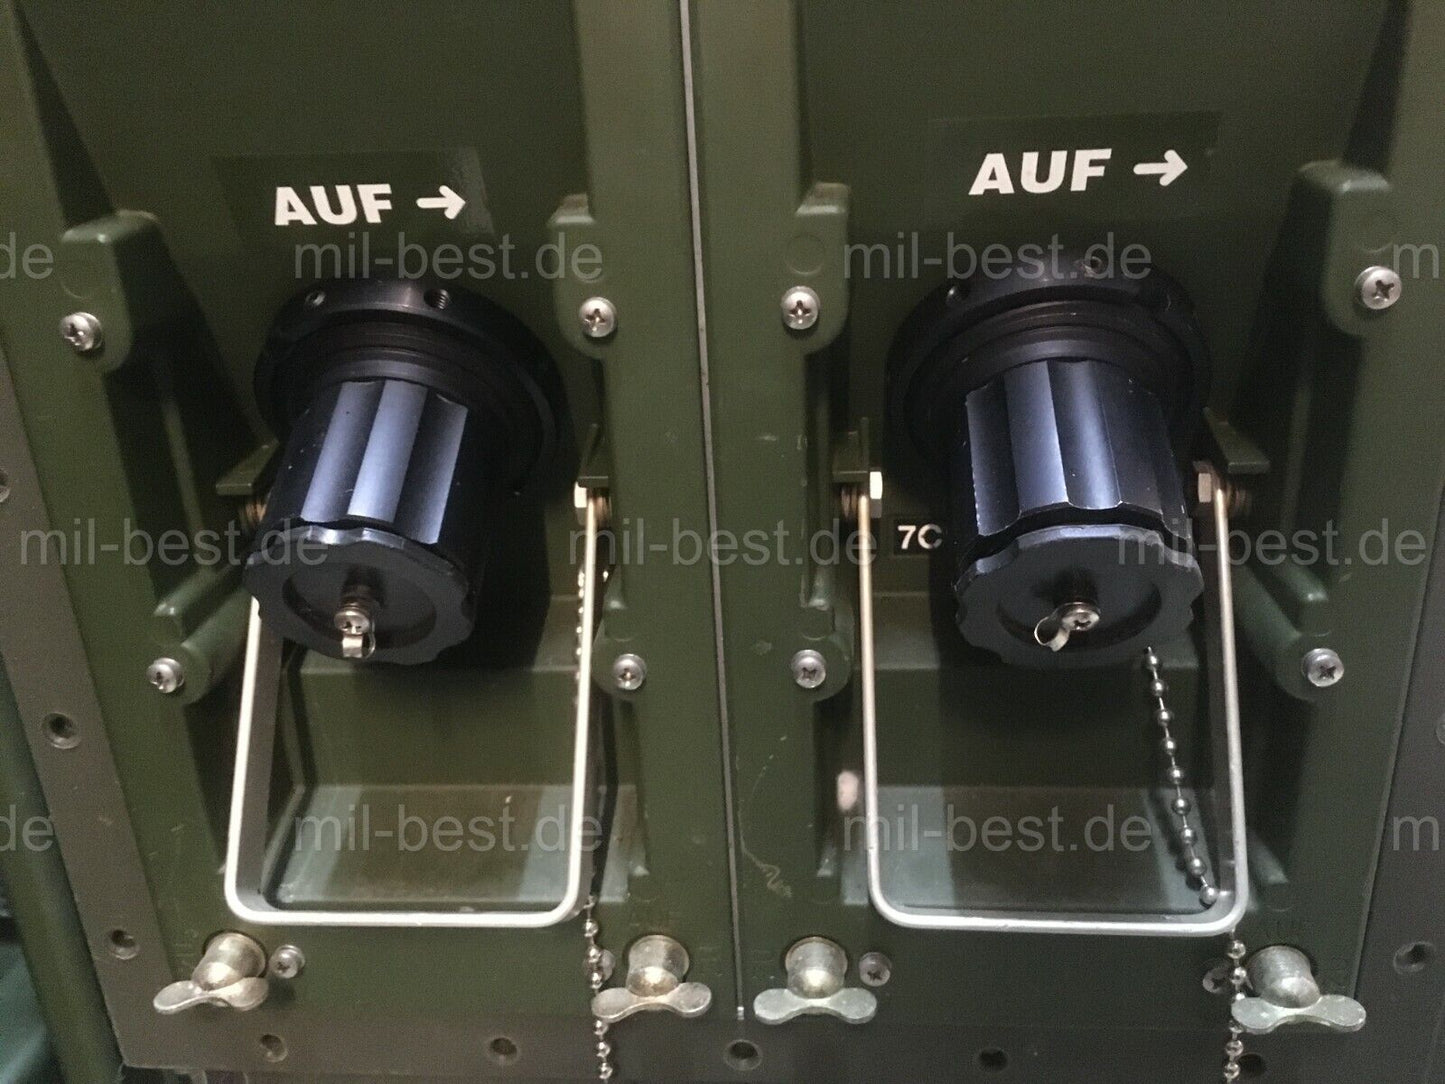 2 Stück Anschaltkasten Richtfunk FM15000 im Einschub Funkgerät Bundeswehr Kabine